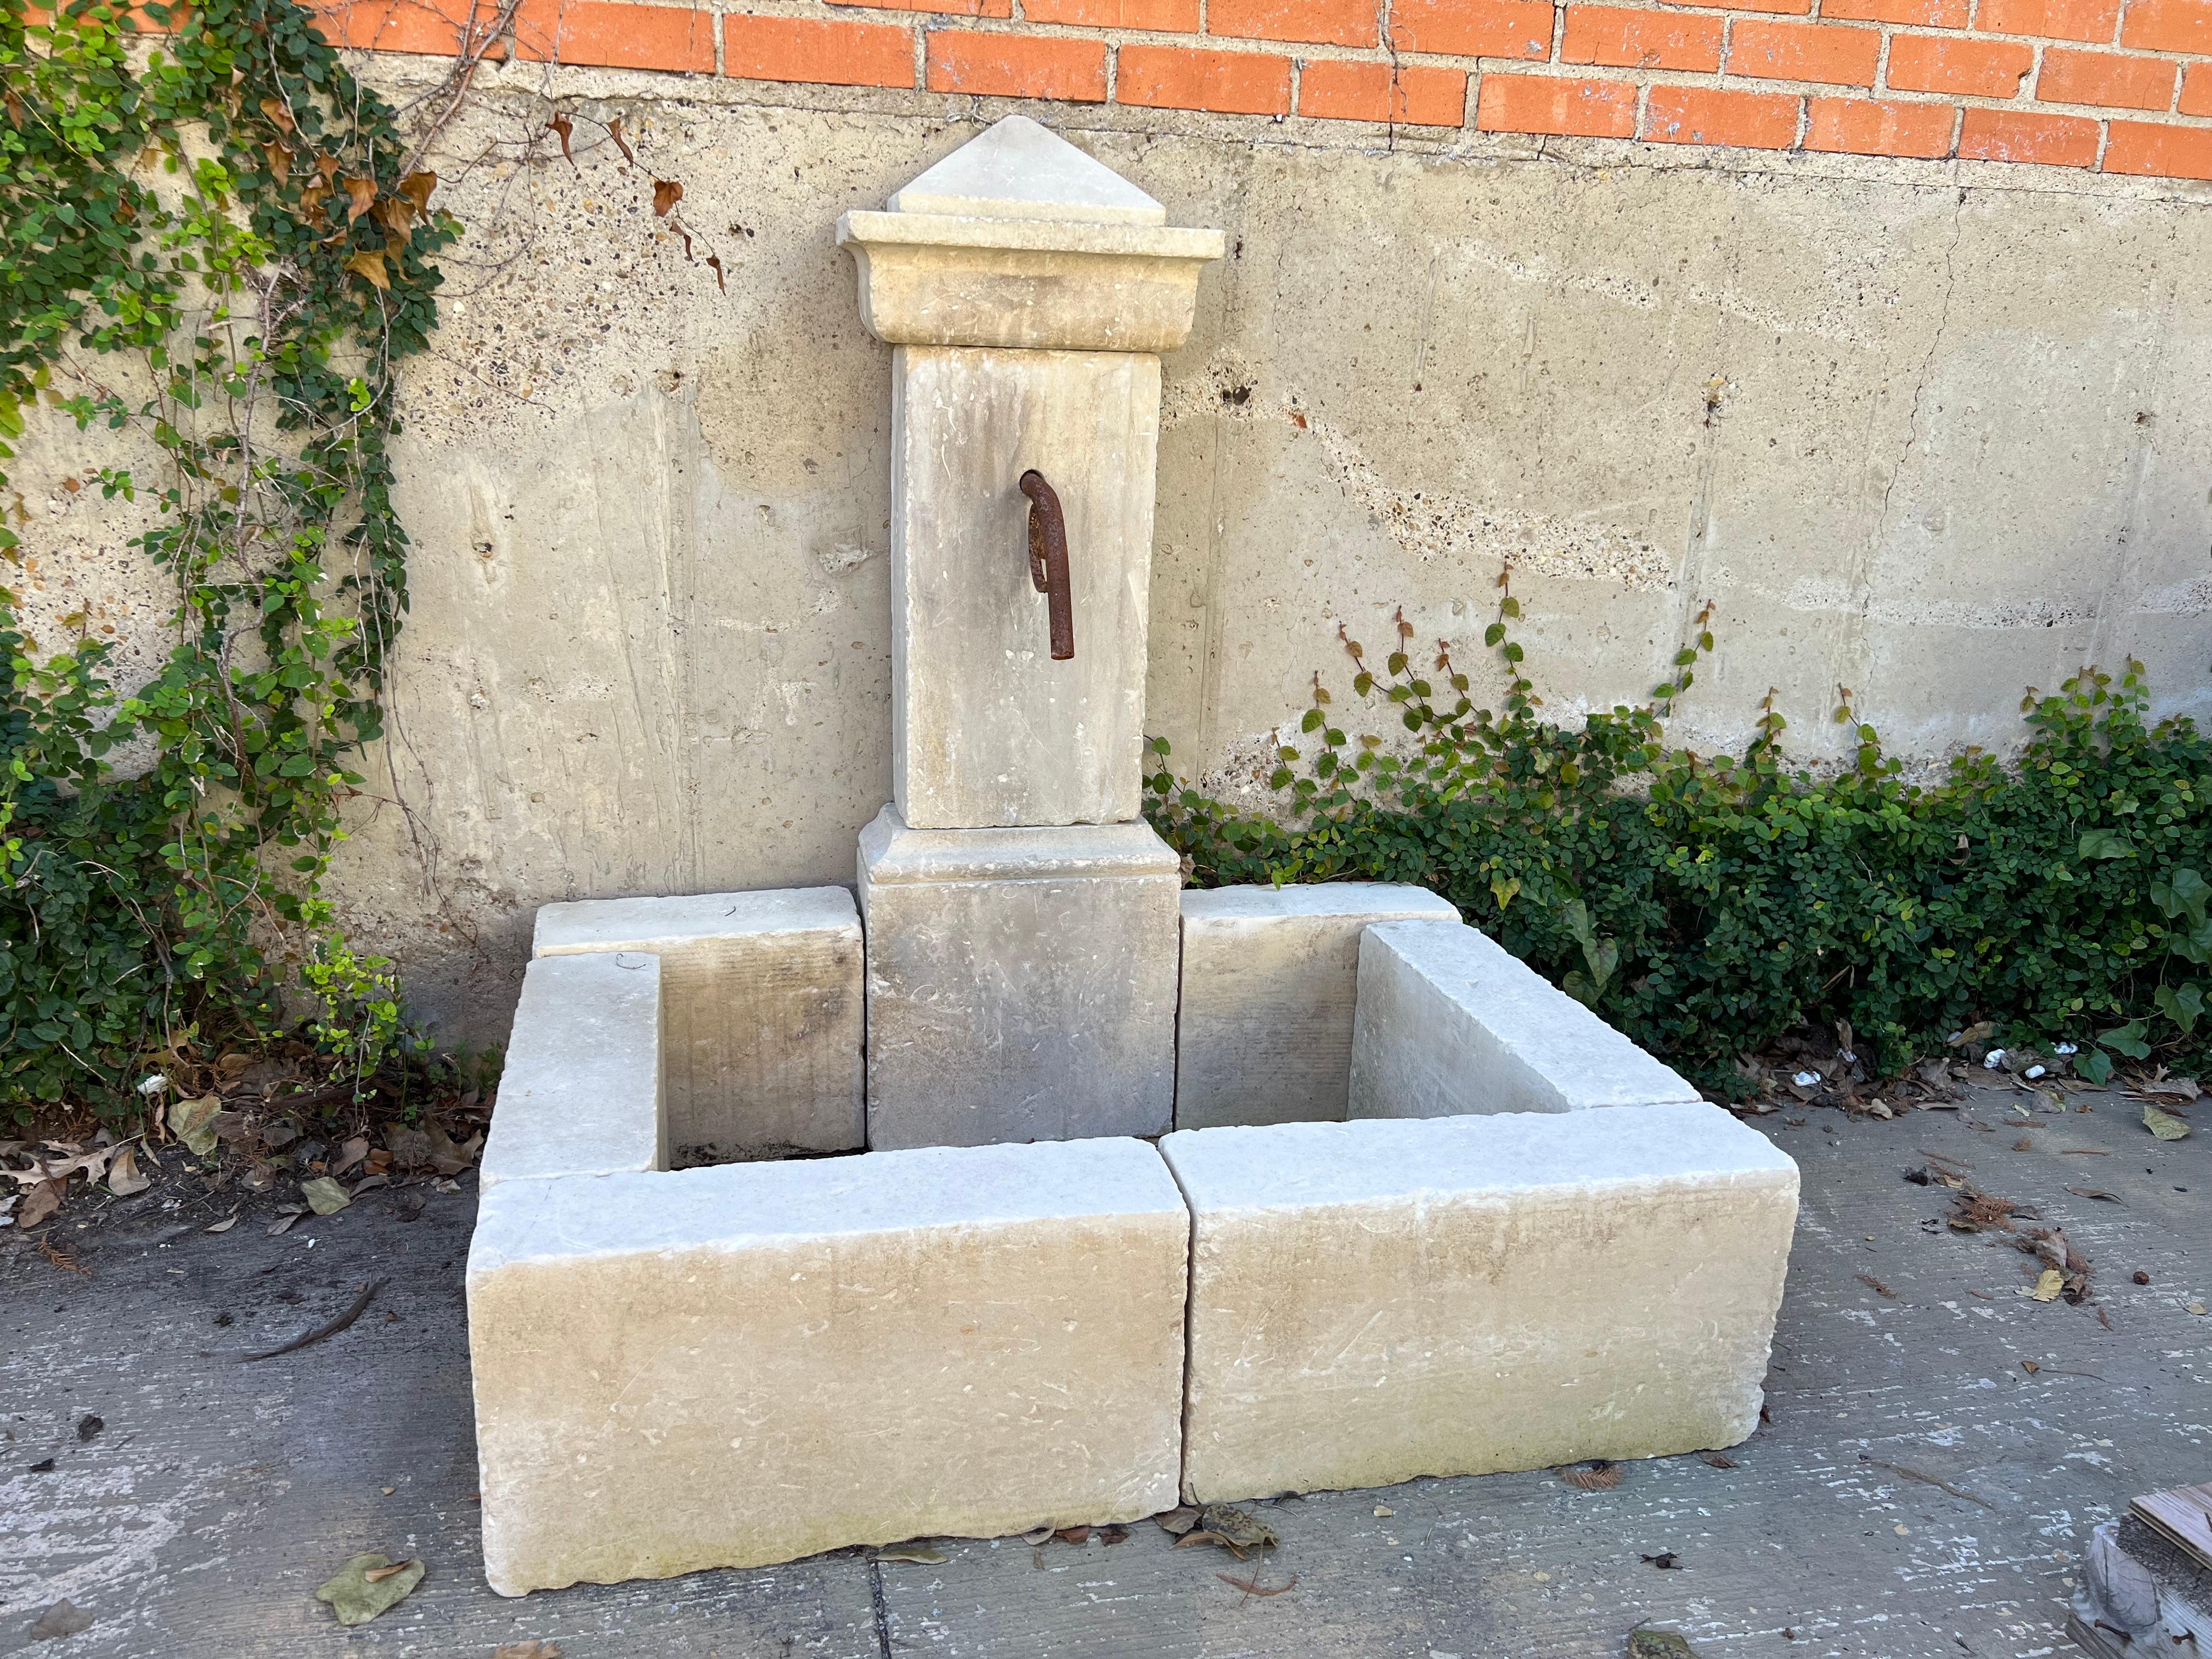 Cette fontaine murale à pilier unique, sculptée à la main, est composée de 10 morceaux de pierre calcaire du sud de l'Italie. La fontaine est surmontée d'un fleuron pyramidal anguleux qui repose sur un entablement avec une profonde corniche en forme